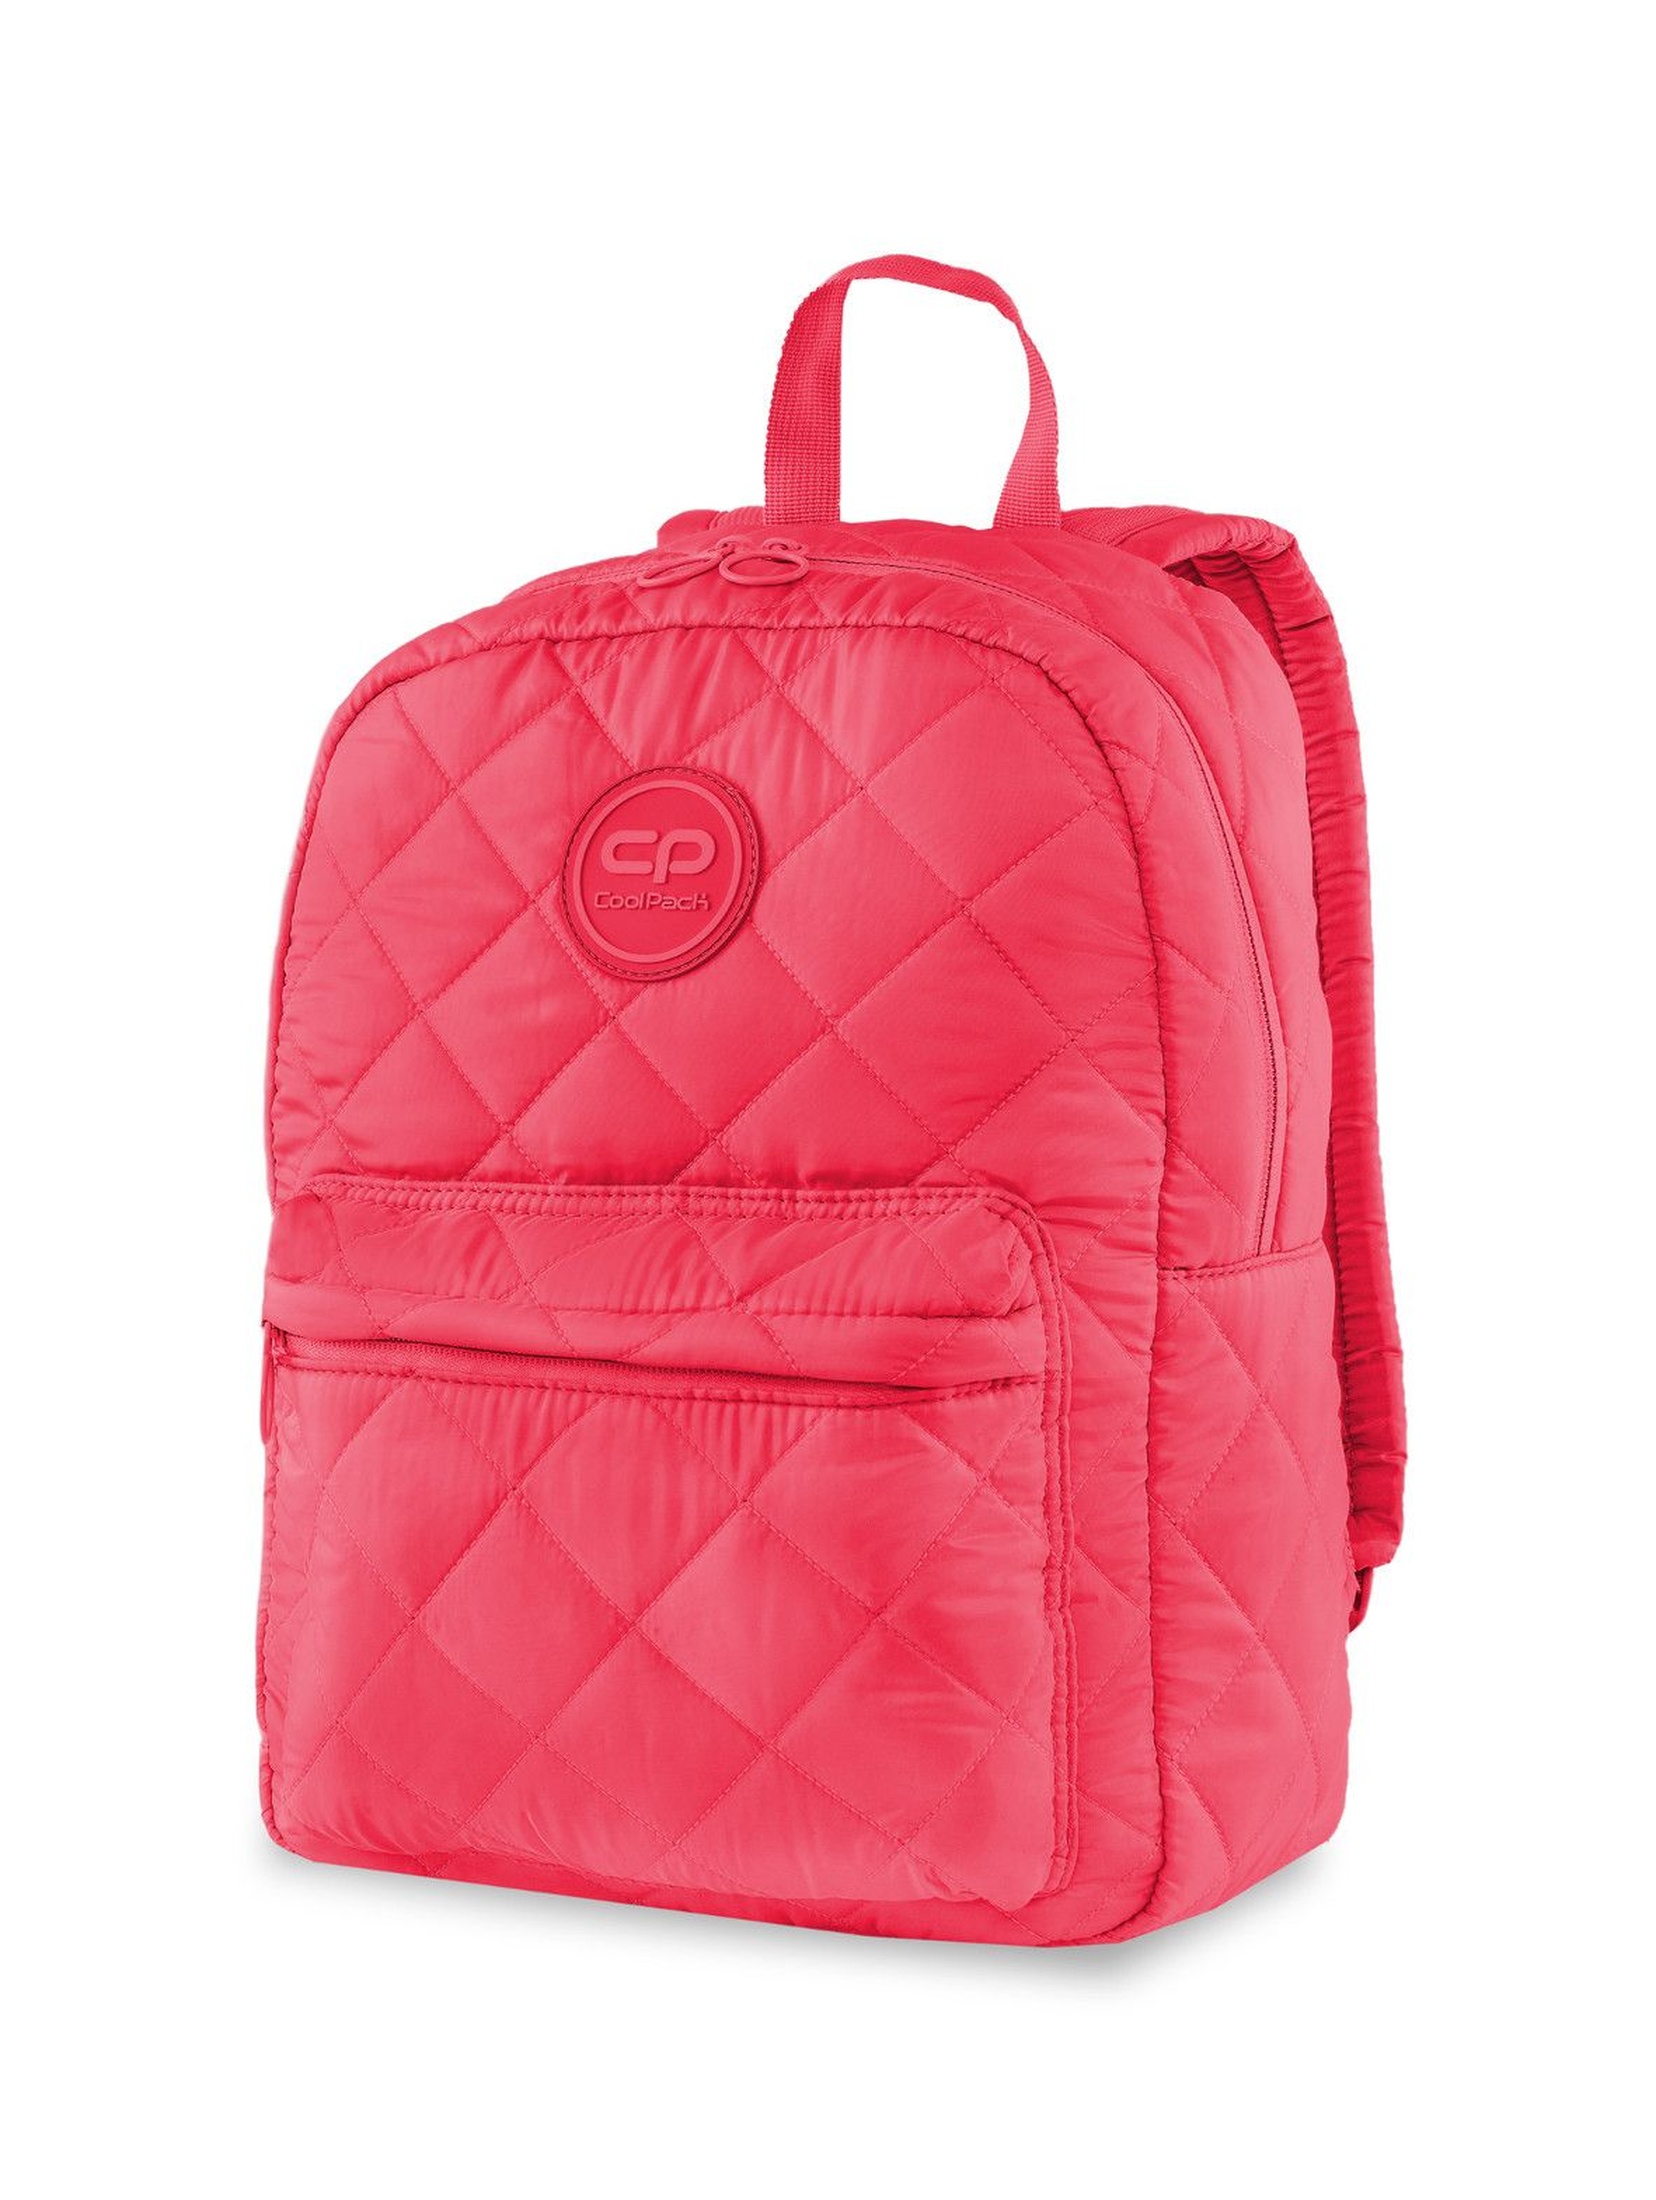 Plecak dla dziewczynki Ruby Coral Touch- pikowany różowy